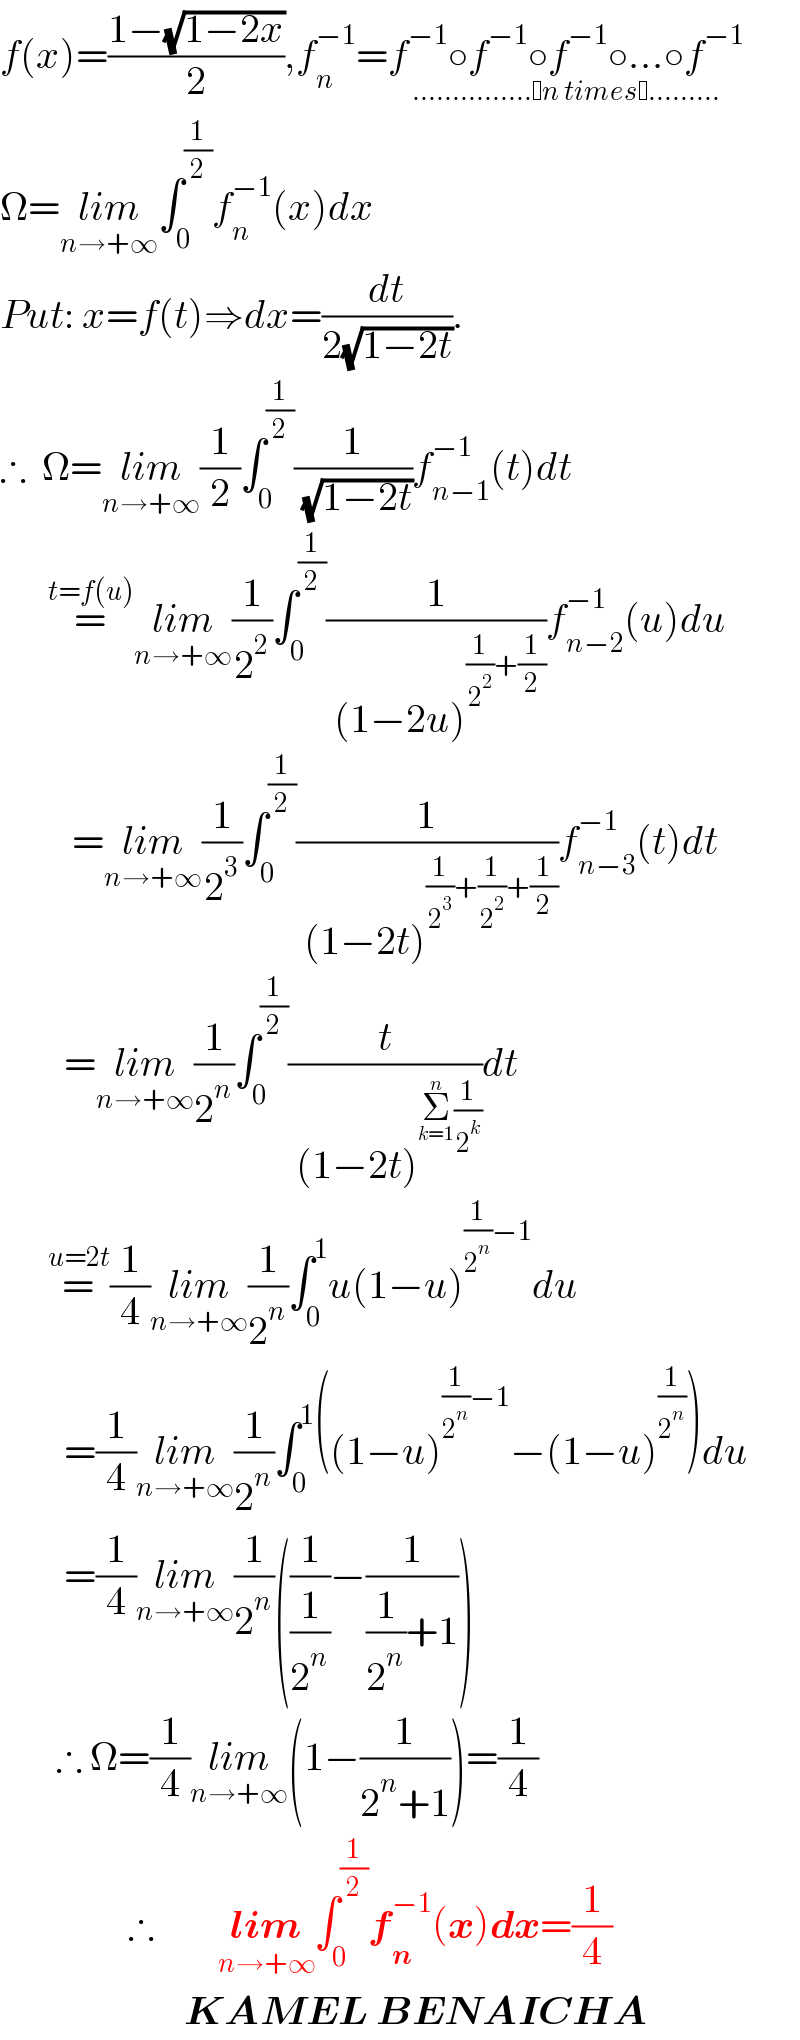 f(x)=((1−(√(1−2x)))/2),f_n ^(−1) =f^(−1) ○f^(−1) ○f^(−1) ○...○f^(−1) _(............... n times .........)   Ω=lim_(n→+∞) ∫_0 ^(1/2) f_n ^(−1) (x)dx  Put: x=f(t)⇒dx=(dt/(2(√(1−2t)))).  ∴  Ω=lim_(n→+∞) (1/2)∫_0 ^(1/2) (1/( (√(1−2t))))f_(n−1) ^(−1) (t)dt        =^(t=f(u)) lim_(n→+∞) (1/2^2 )∫_0 ^(1/2) (1/( (1−2u)^((1/2^2 )+(1/2)) ))f_(n−2) ^(−1) (u)du           =lim_(n→+∞) (1/2^3 )∫_0 ^(1/2) (1/( (1−2t)^((1/2^3 )+(1/2^2 )+(1/2)) ))f_(n−3) ^(−1) (t)dt          =lim_(n→+∞) (1/2^n )∫_0 ^(1/2) (t/( (1−2t)^(Σ_(k=1) ^n (1/2^k )) ))dt        =^(u=2t) (1/4)lim_(n→+∞) (1/2^n )∫_0 ^1 u(1−u)^((1/2^n )−1) du          =(1/4)lim_(n→+∞) (1/2^n )∫_0 ^1 ((1−u)^((1/2^n )−1) −(1−u)^(1/2^n ) )du          =(1/4)lim_(n→+∞) (1/2^n )((1/(1/2^n ))−(1/((1/2^n )+1)))         ∴ Ω=(1/4)lim_(n→+∞) (1−(1/(2^n +1)))=(1/4)                  ∴        lim_(n→+∞) ∫_0 ^(1/2) f_n ^(−1) (x)dx=(1/4)                         KAMEL BENAICHA  